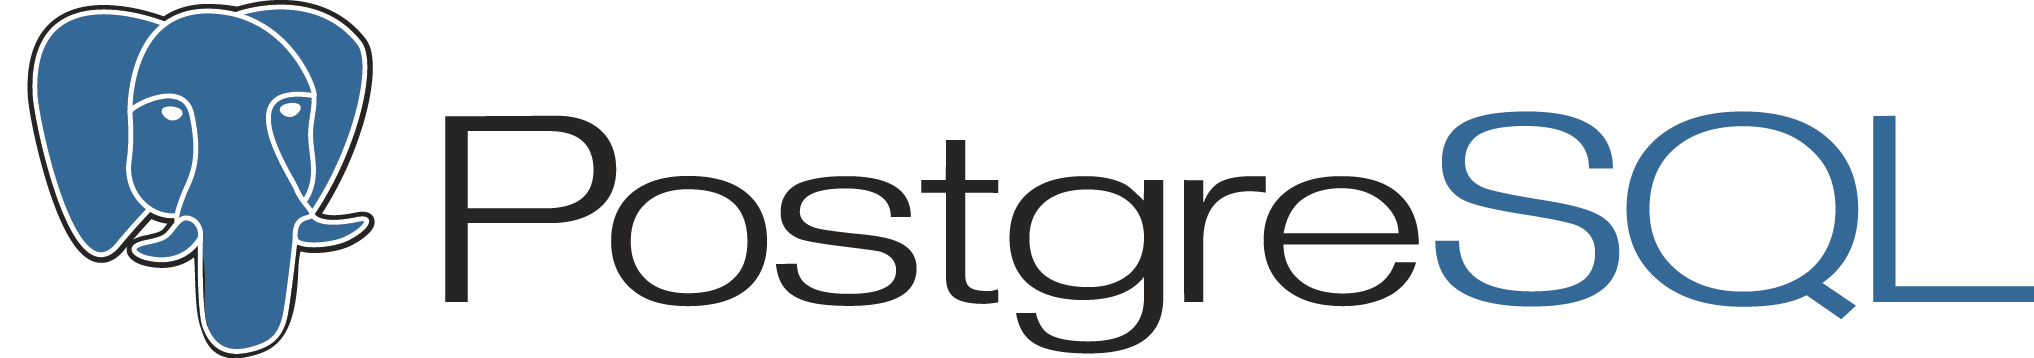 PostgreSQL Logo - Postgresql Icon Icon Library